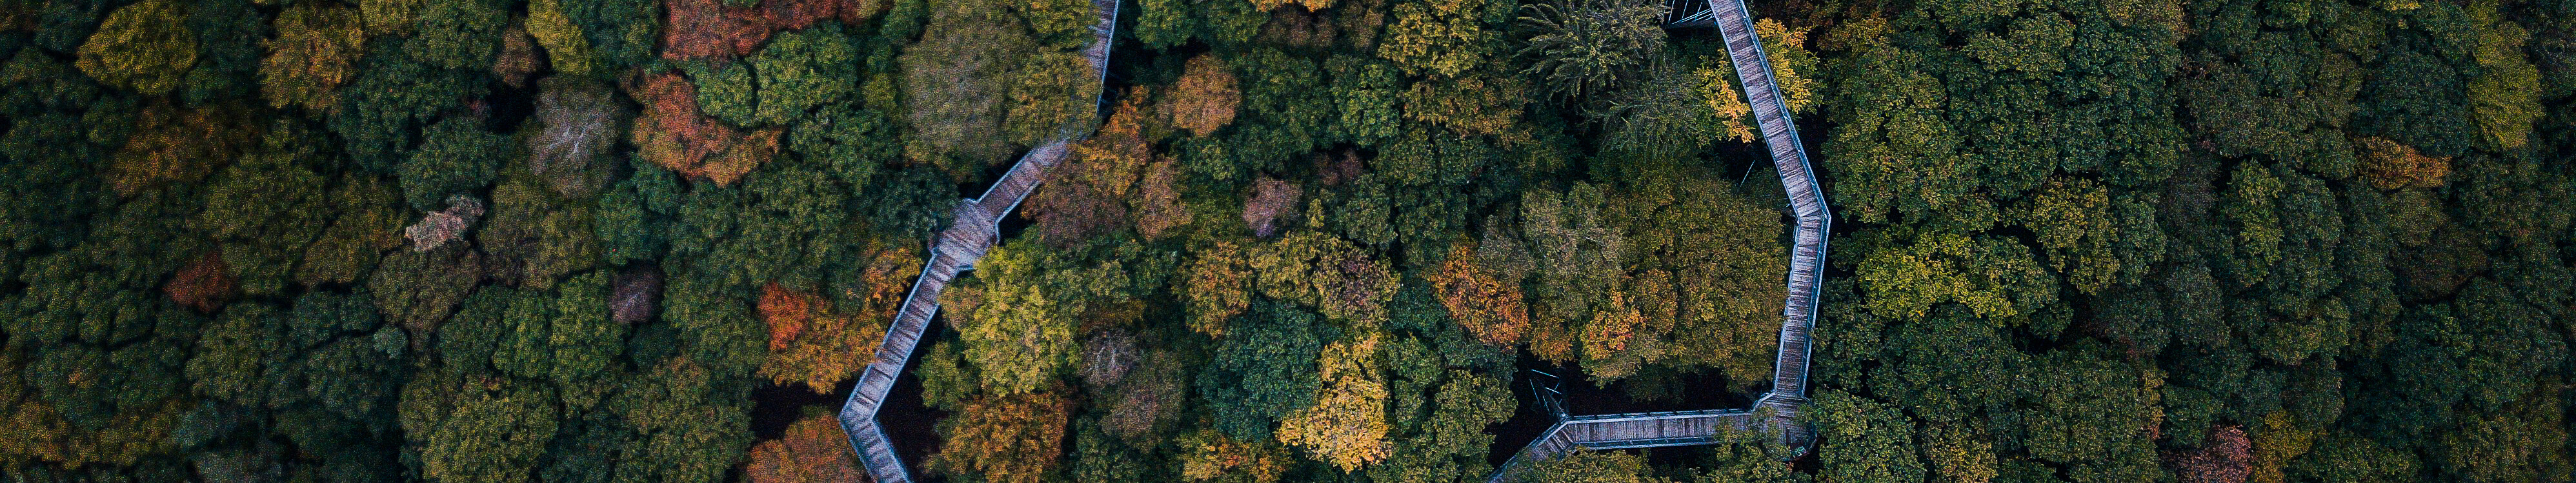 Blick von oben auf den schmalzen Holzsteg des Panarbora Baumwipfelpfads, der sich durch den Wald schlängelt. © Tourismus NRW e.V.